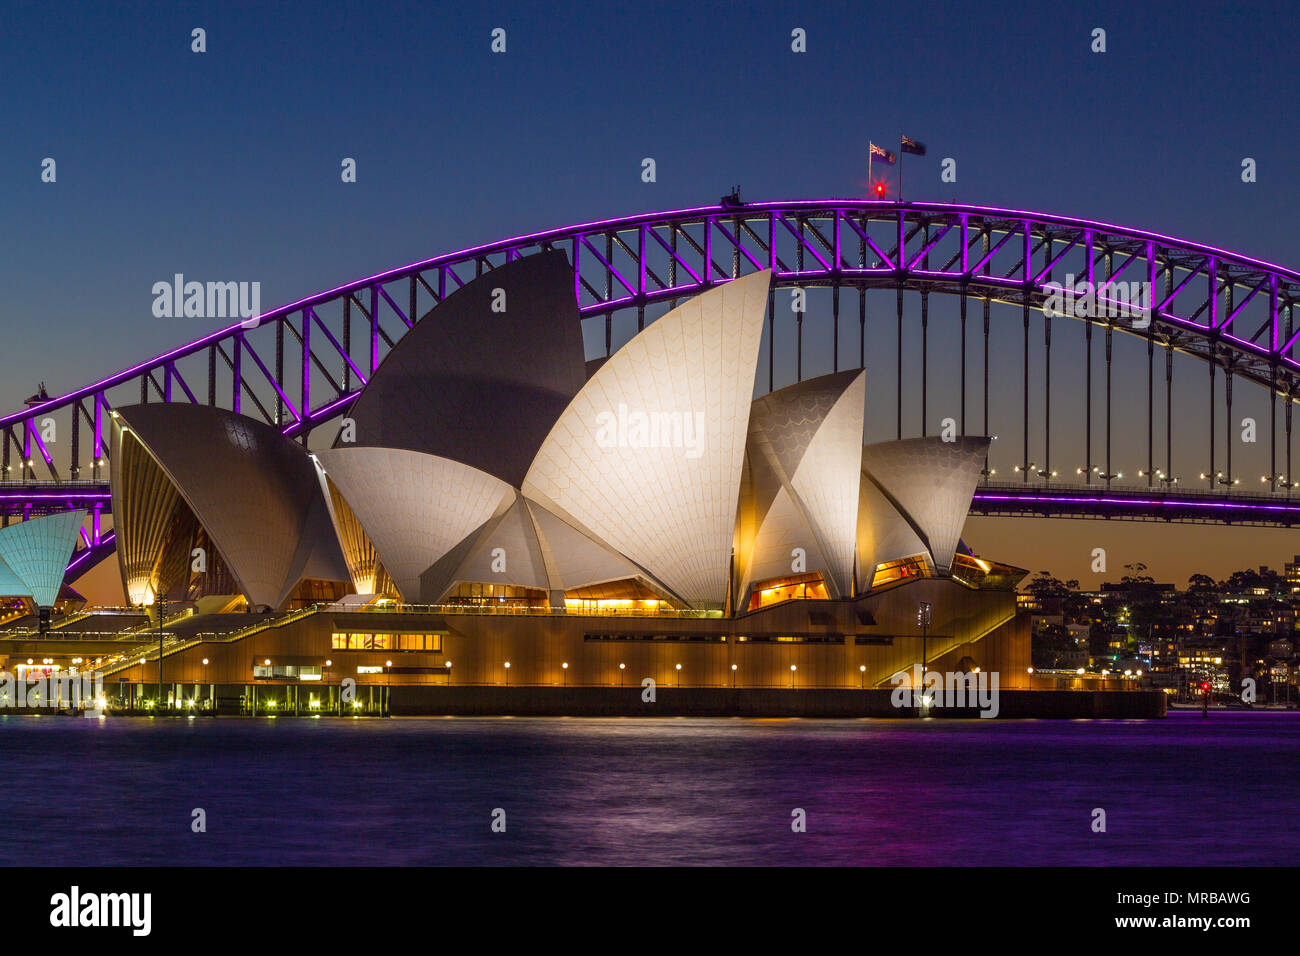 Sydney Harbour Bridge e Sydney Opera House durante il festival 'Vivid Sydney' del 2018, che proietta speciali effetti di luce su punti di riferimento notevoli. Foto Stock